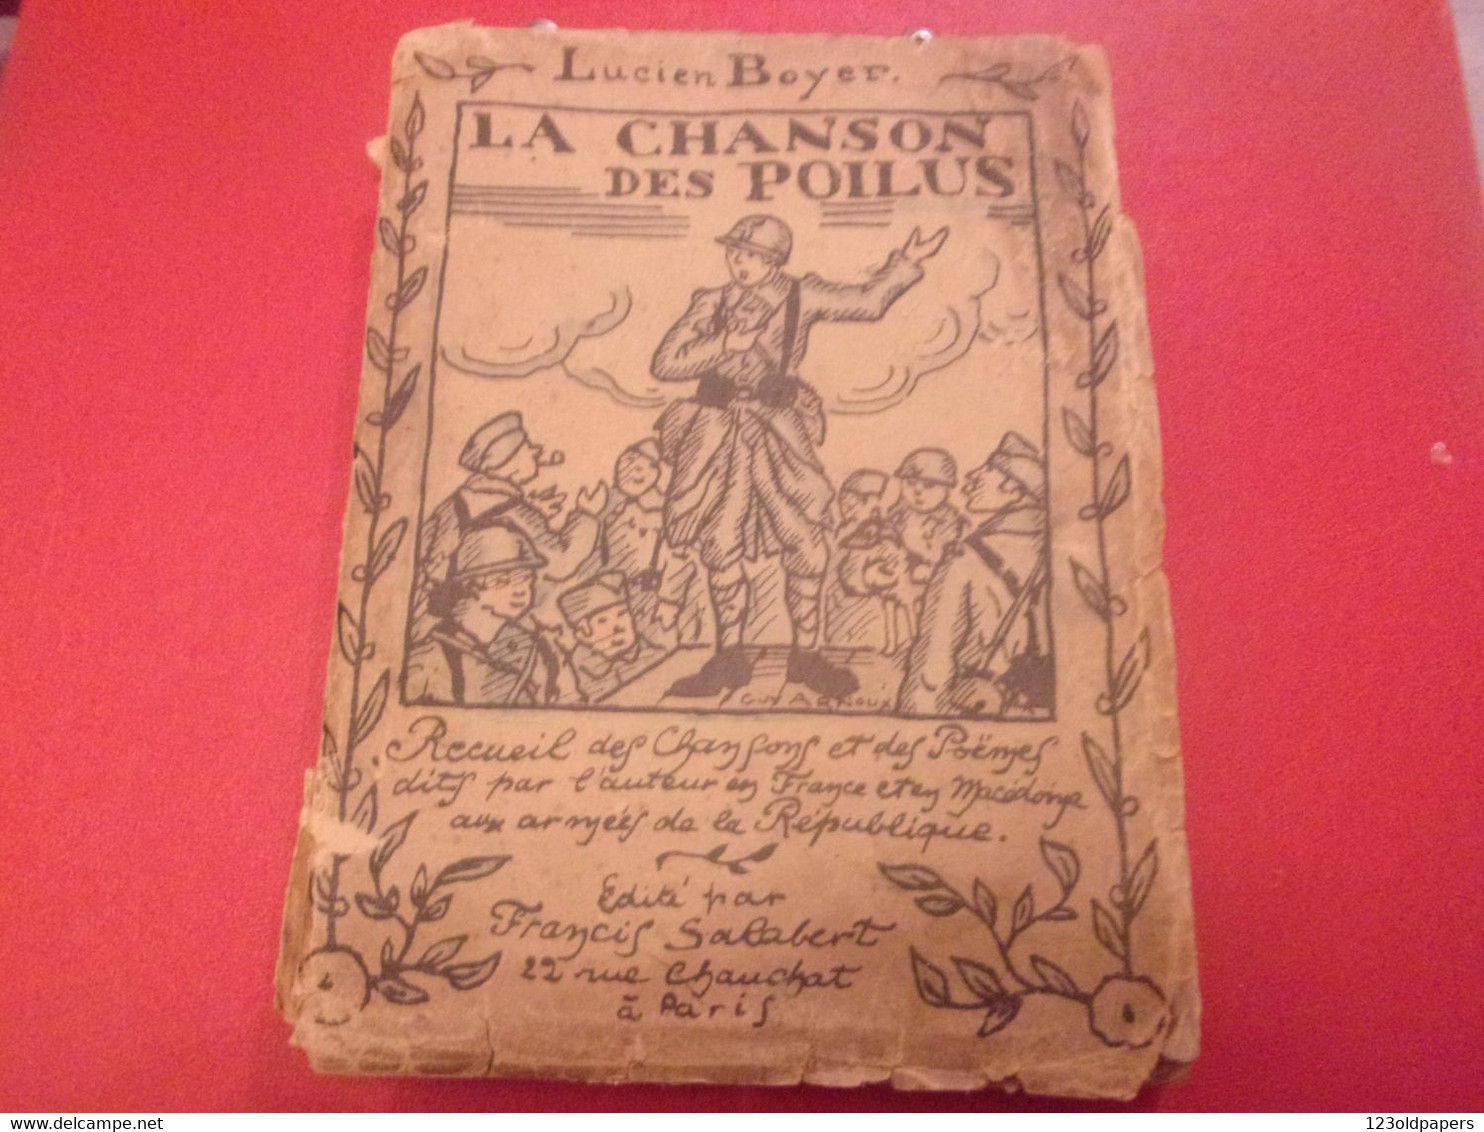 ️ La Chanson Des Poilus Lucien Boyer ENVOI DE L AUTEUR  SALABERT 1918 ILLUSTRE ARNOUX  / DE VALERIO WWI - Guerre 1914-18